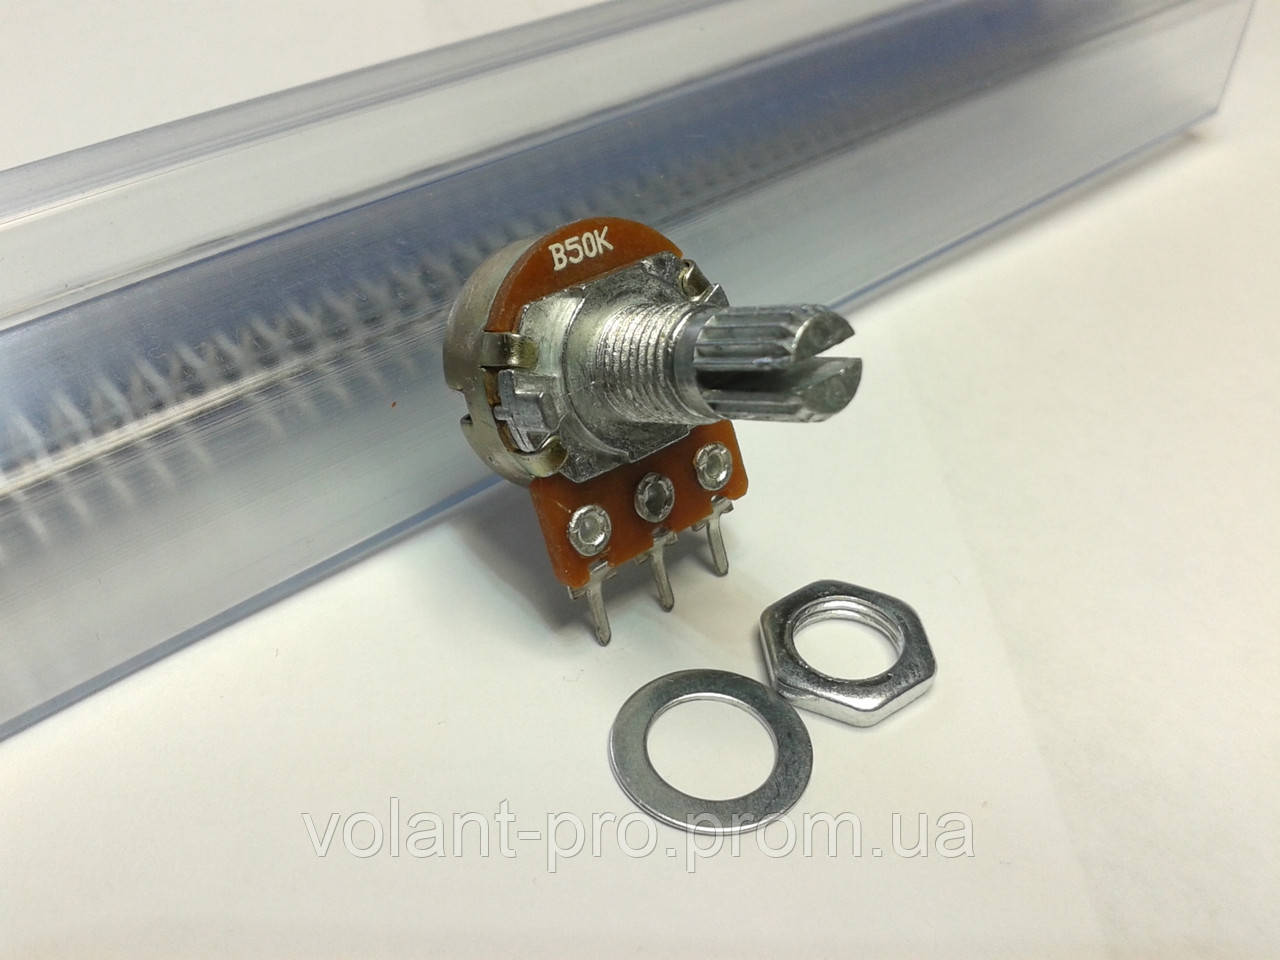 Резистор змінний WH148 50 кОм, 3 pin, моно, 15 мм.